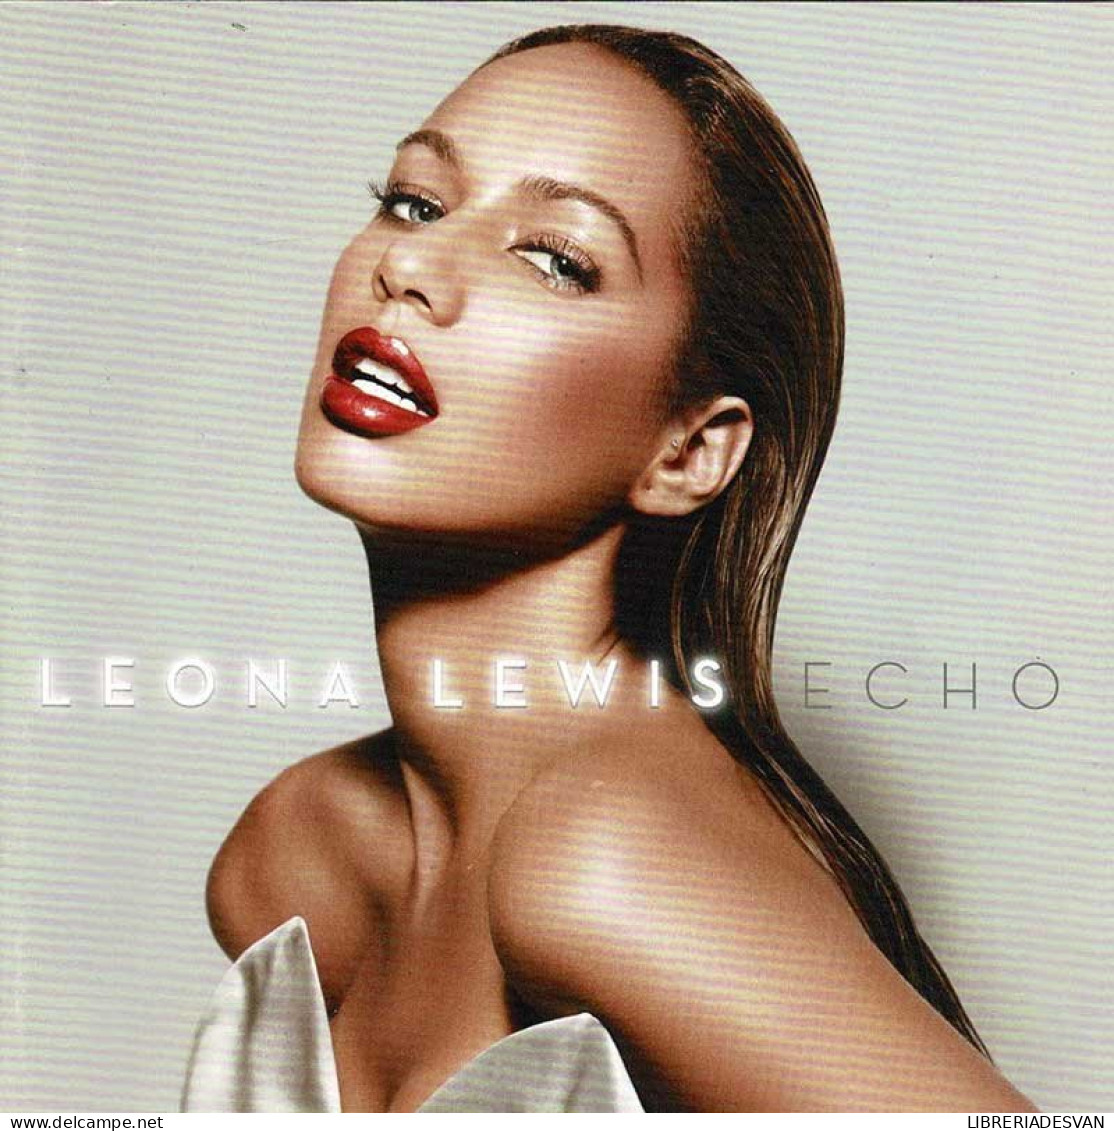 Leona Lewis - Echo. CD - Disco, Pop